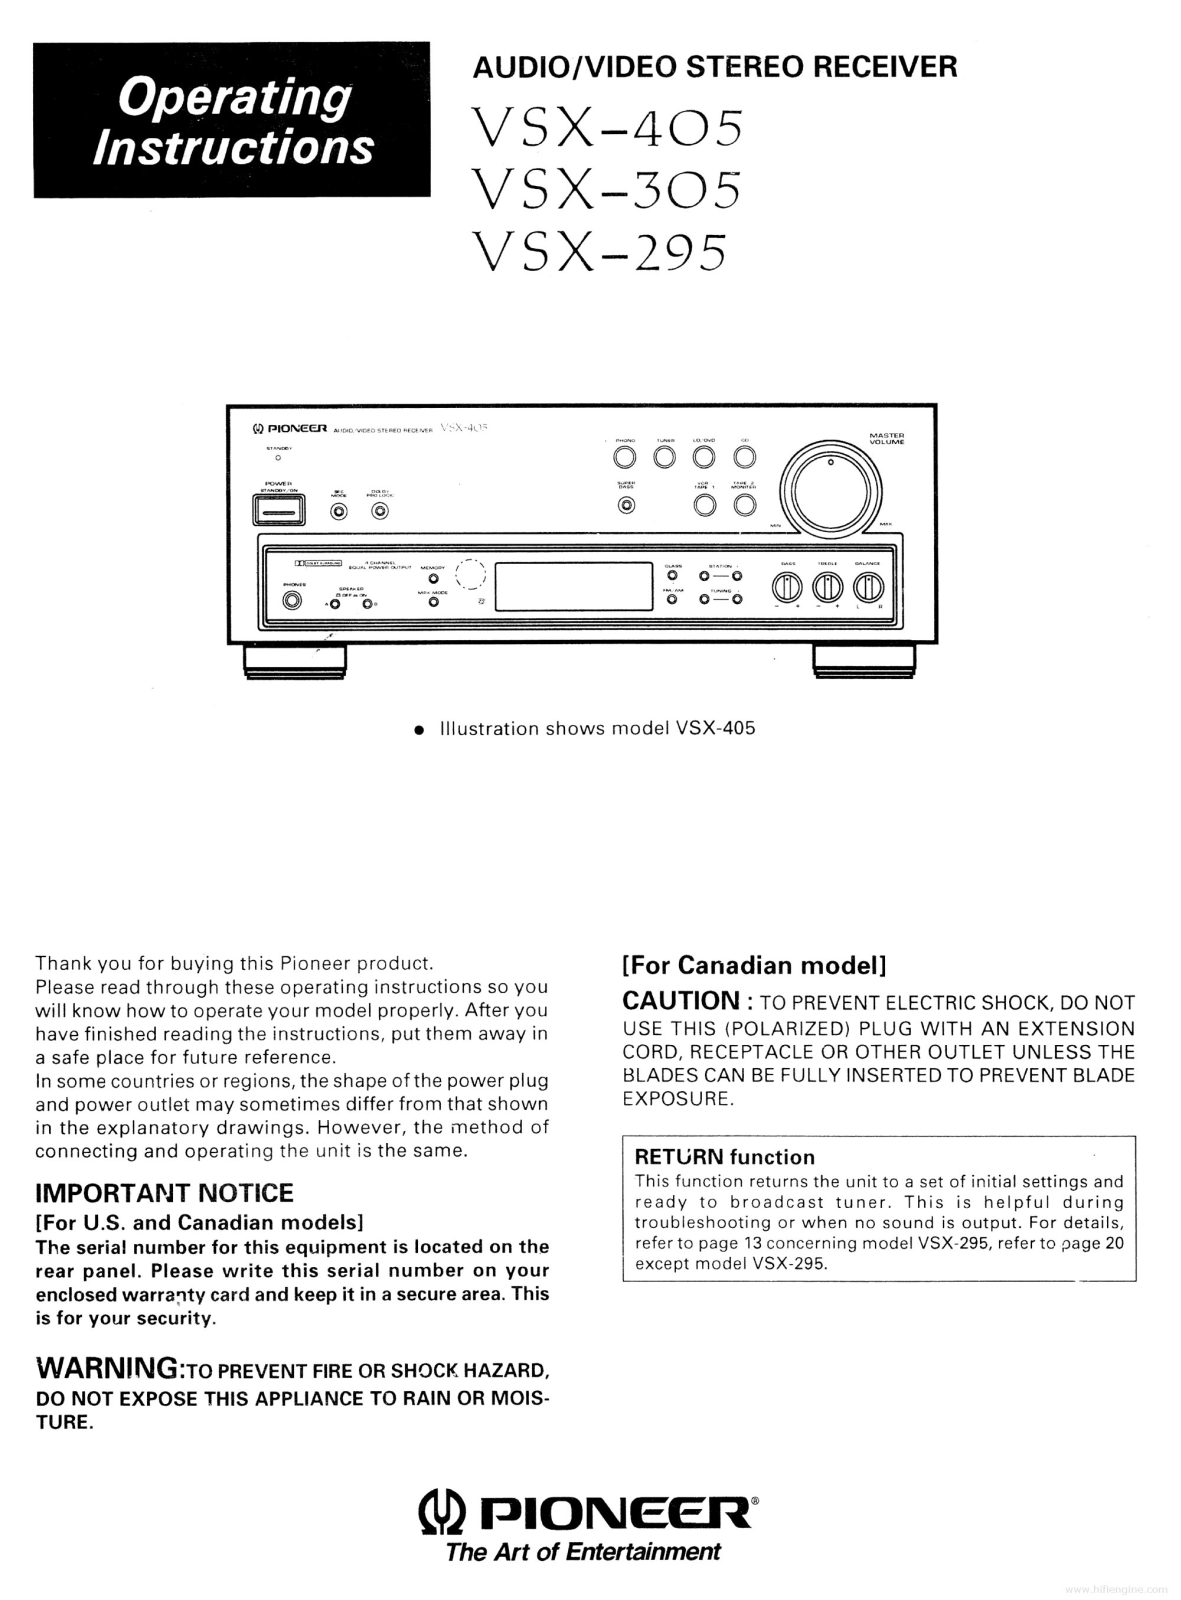 Pioneer VSX-295, VSX-305, VSX-405 Operating Manual